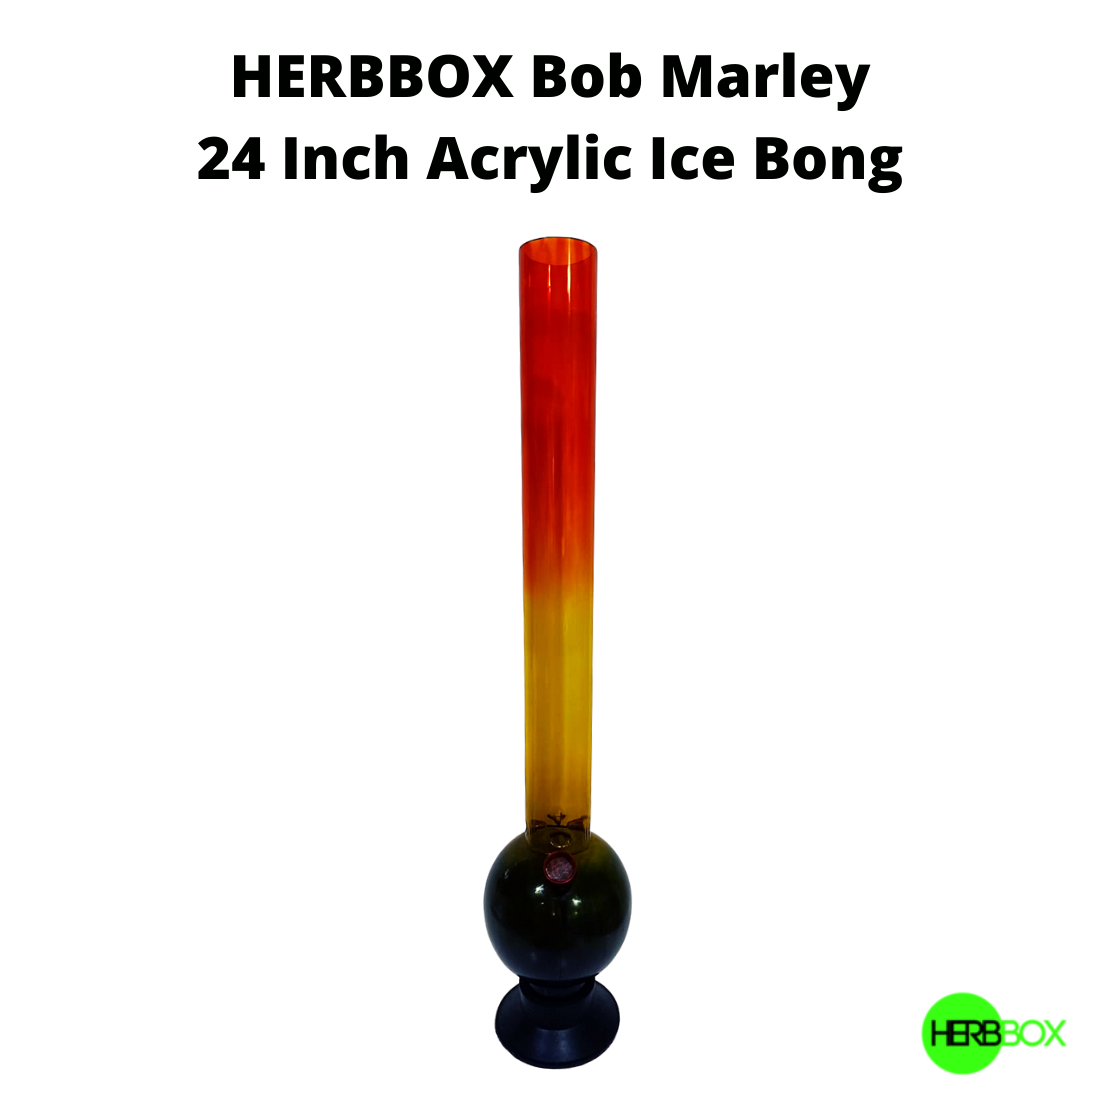 HERBBOX Bob Marley Acrylic Ice Bong are now available on Jonnybaba Lifestyle